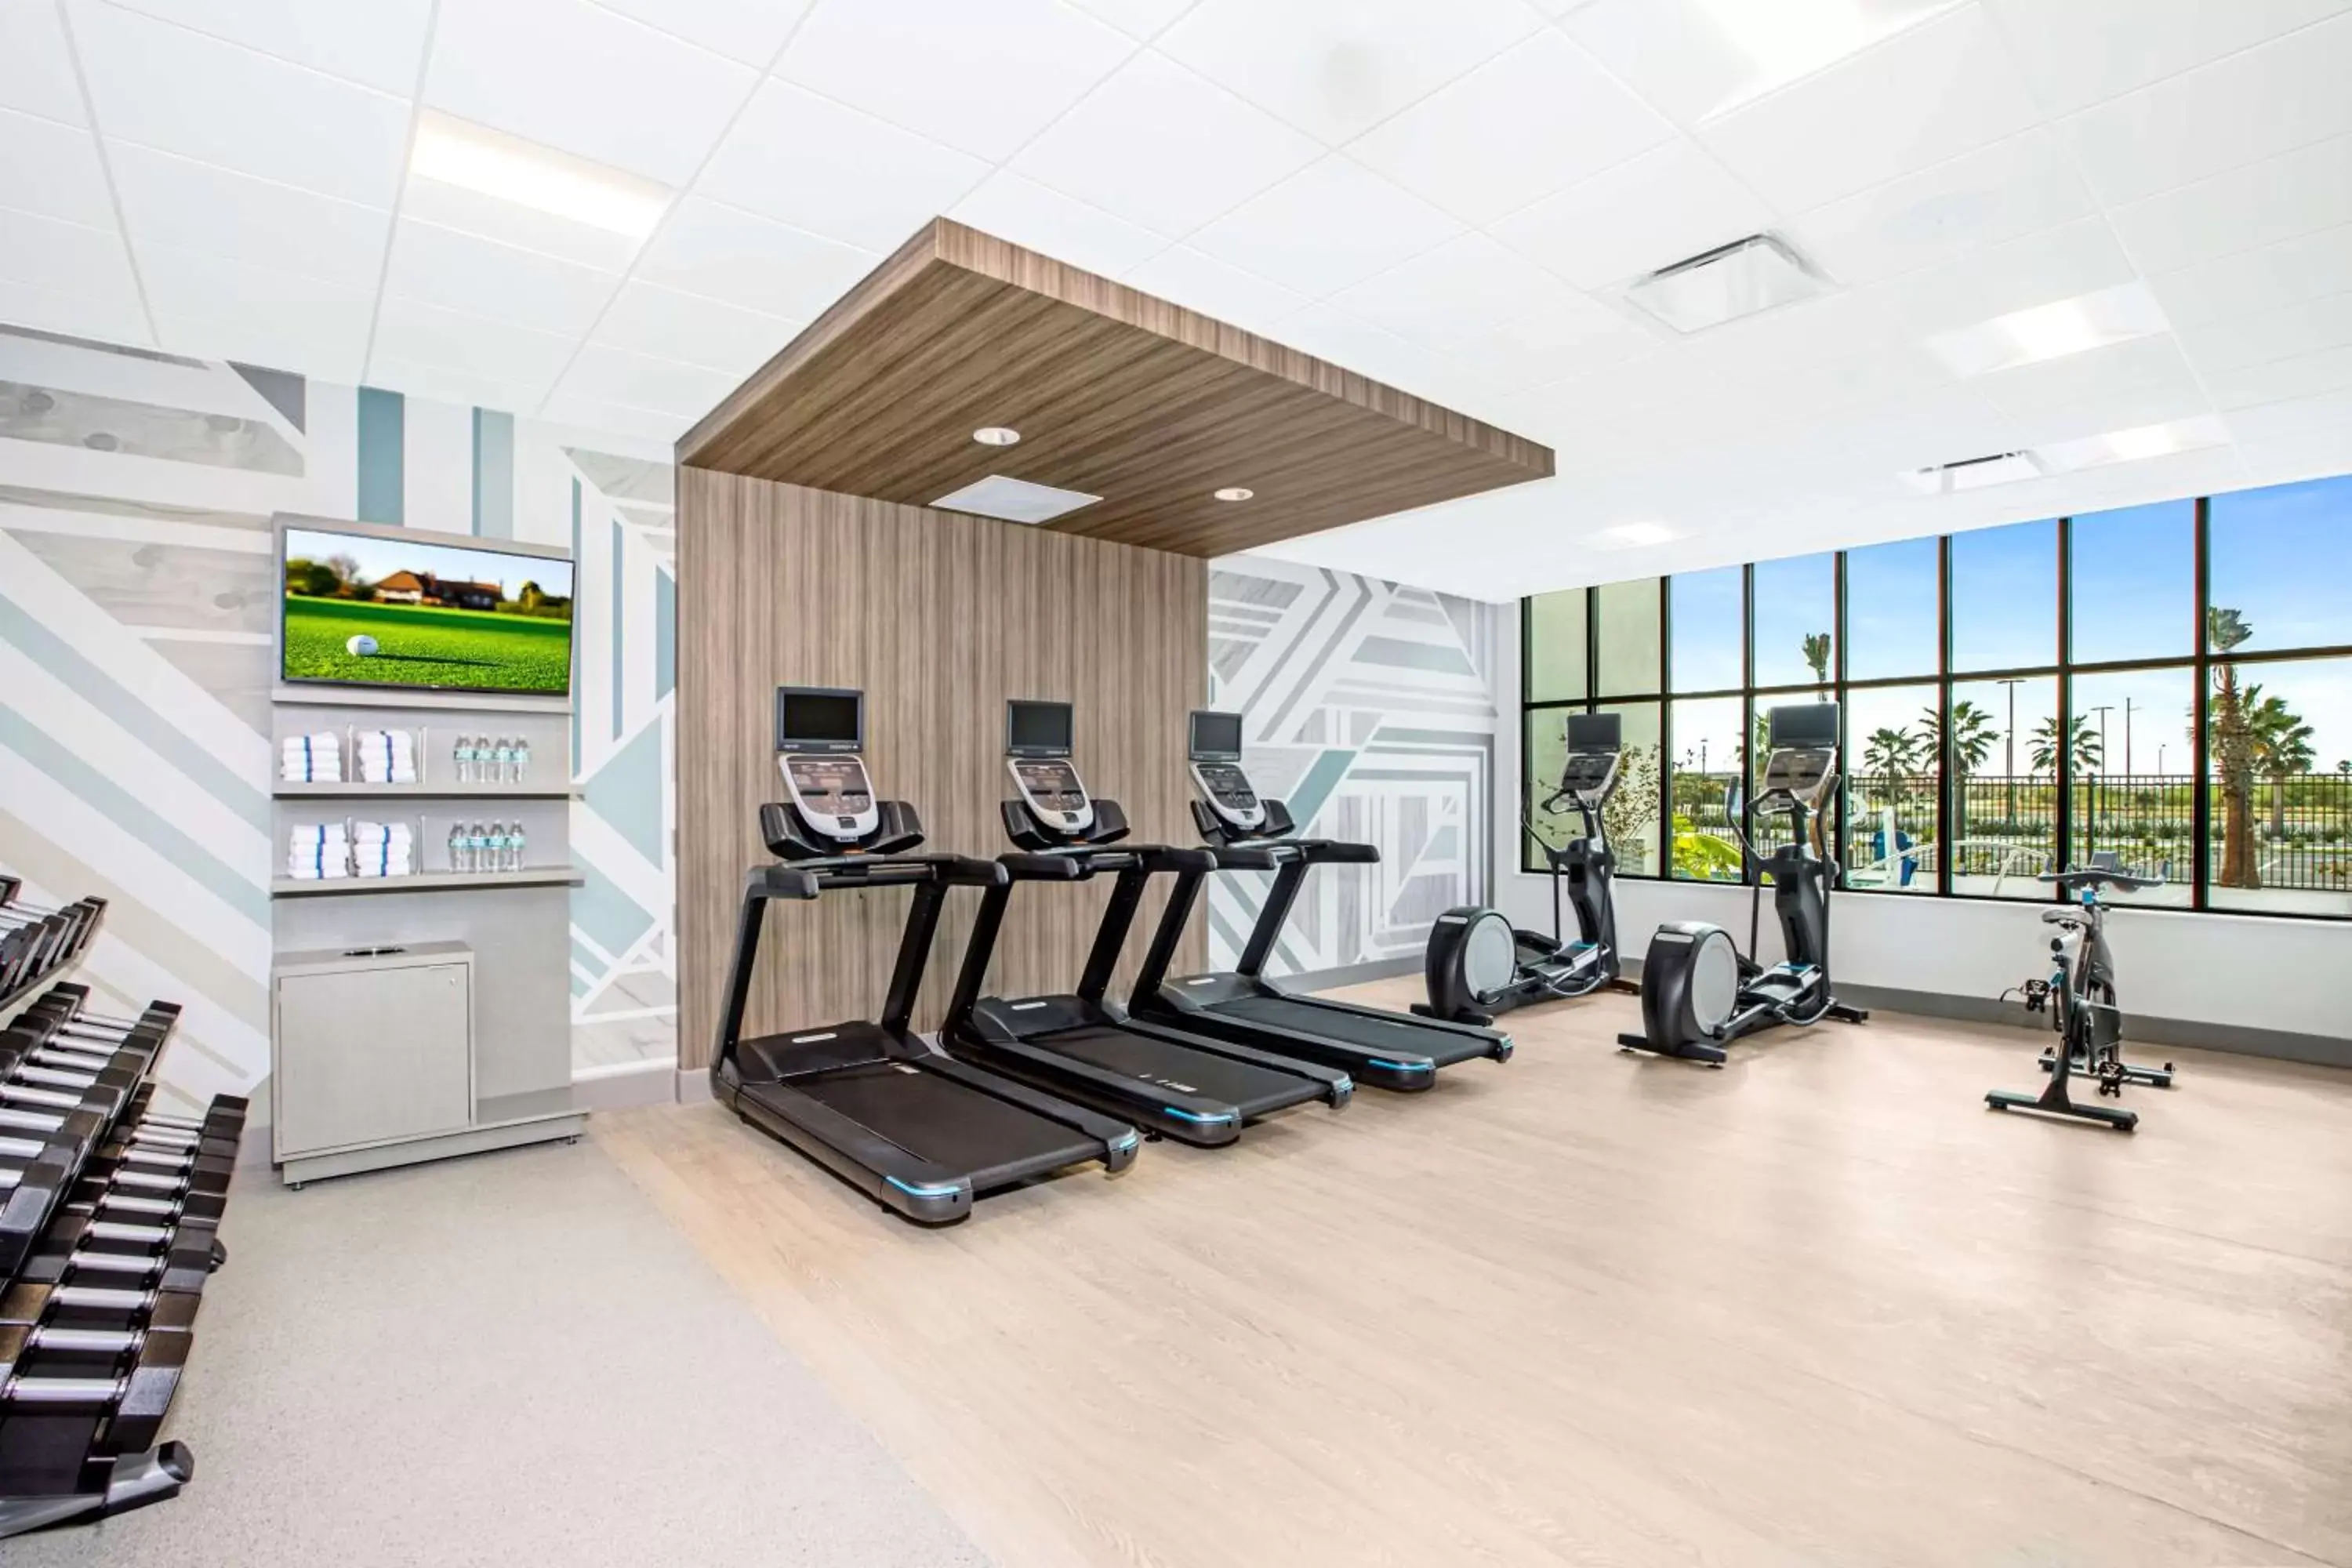 Fitness centre/facilities, Fitness Center/Facilities in Hilton Garden Inn Harlingen Convention Center, Tx